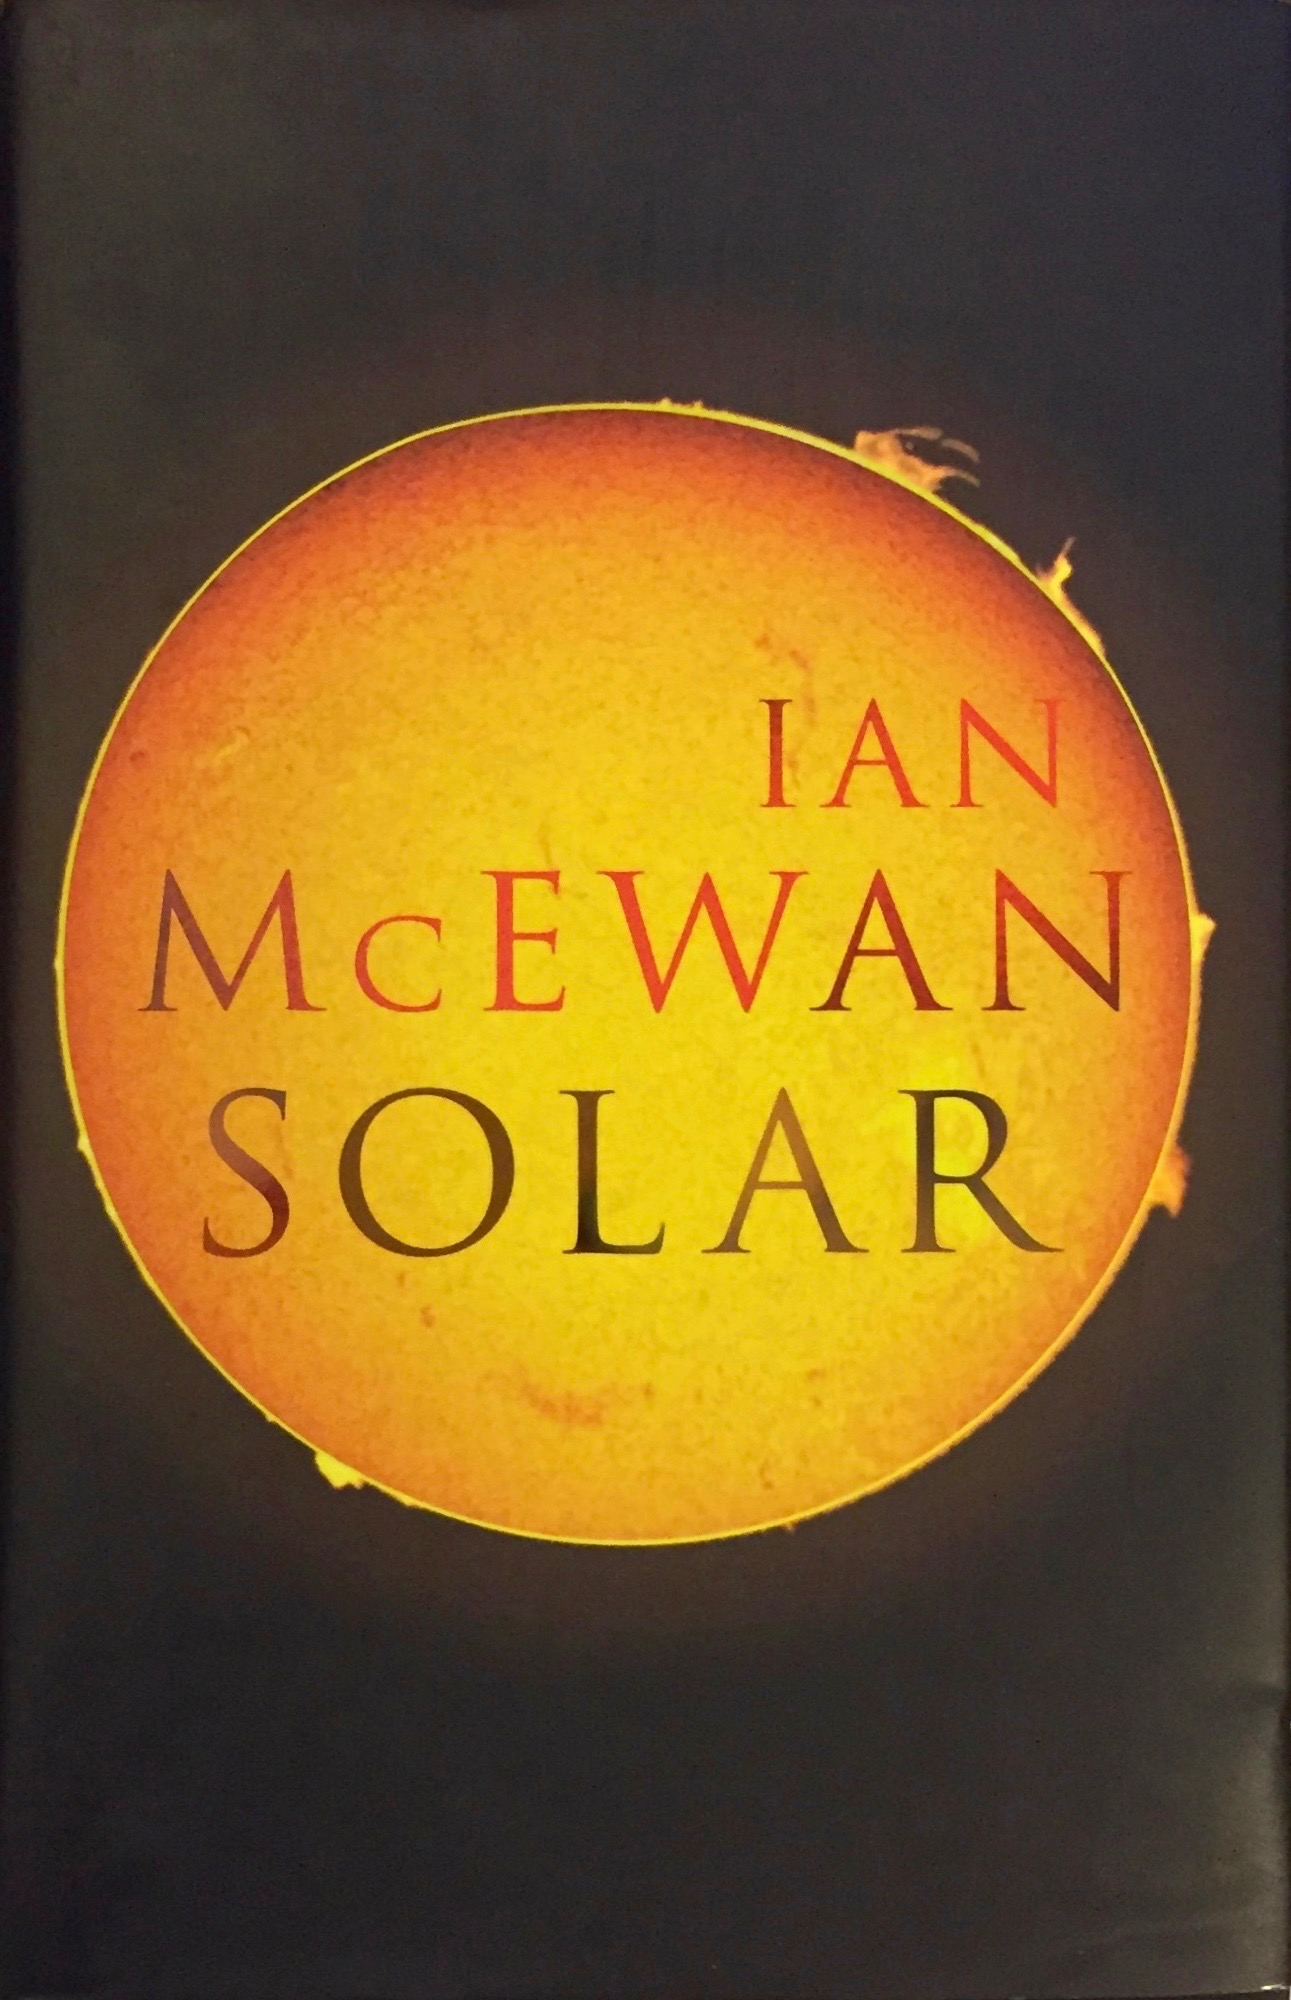 Ian McEwan: Solar, 2010 – first edition. £7.50